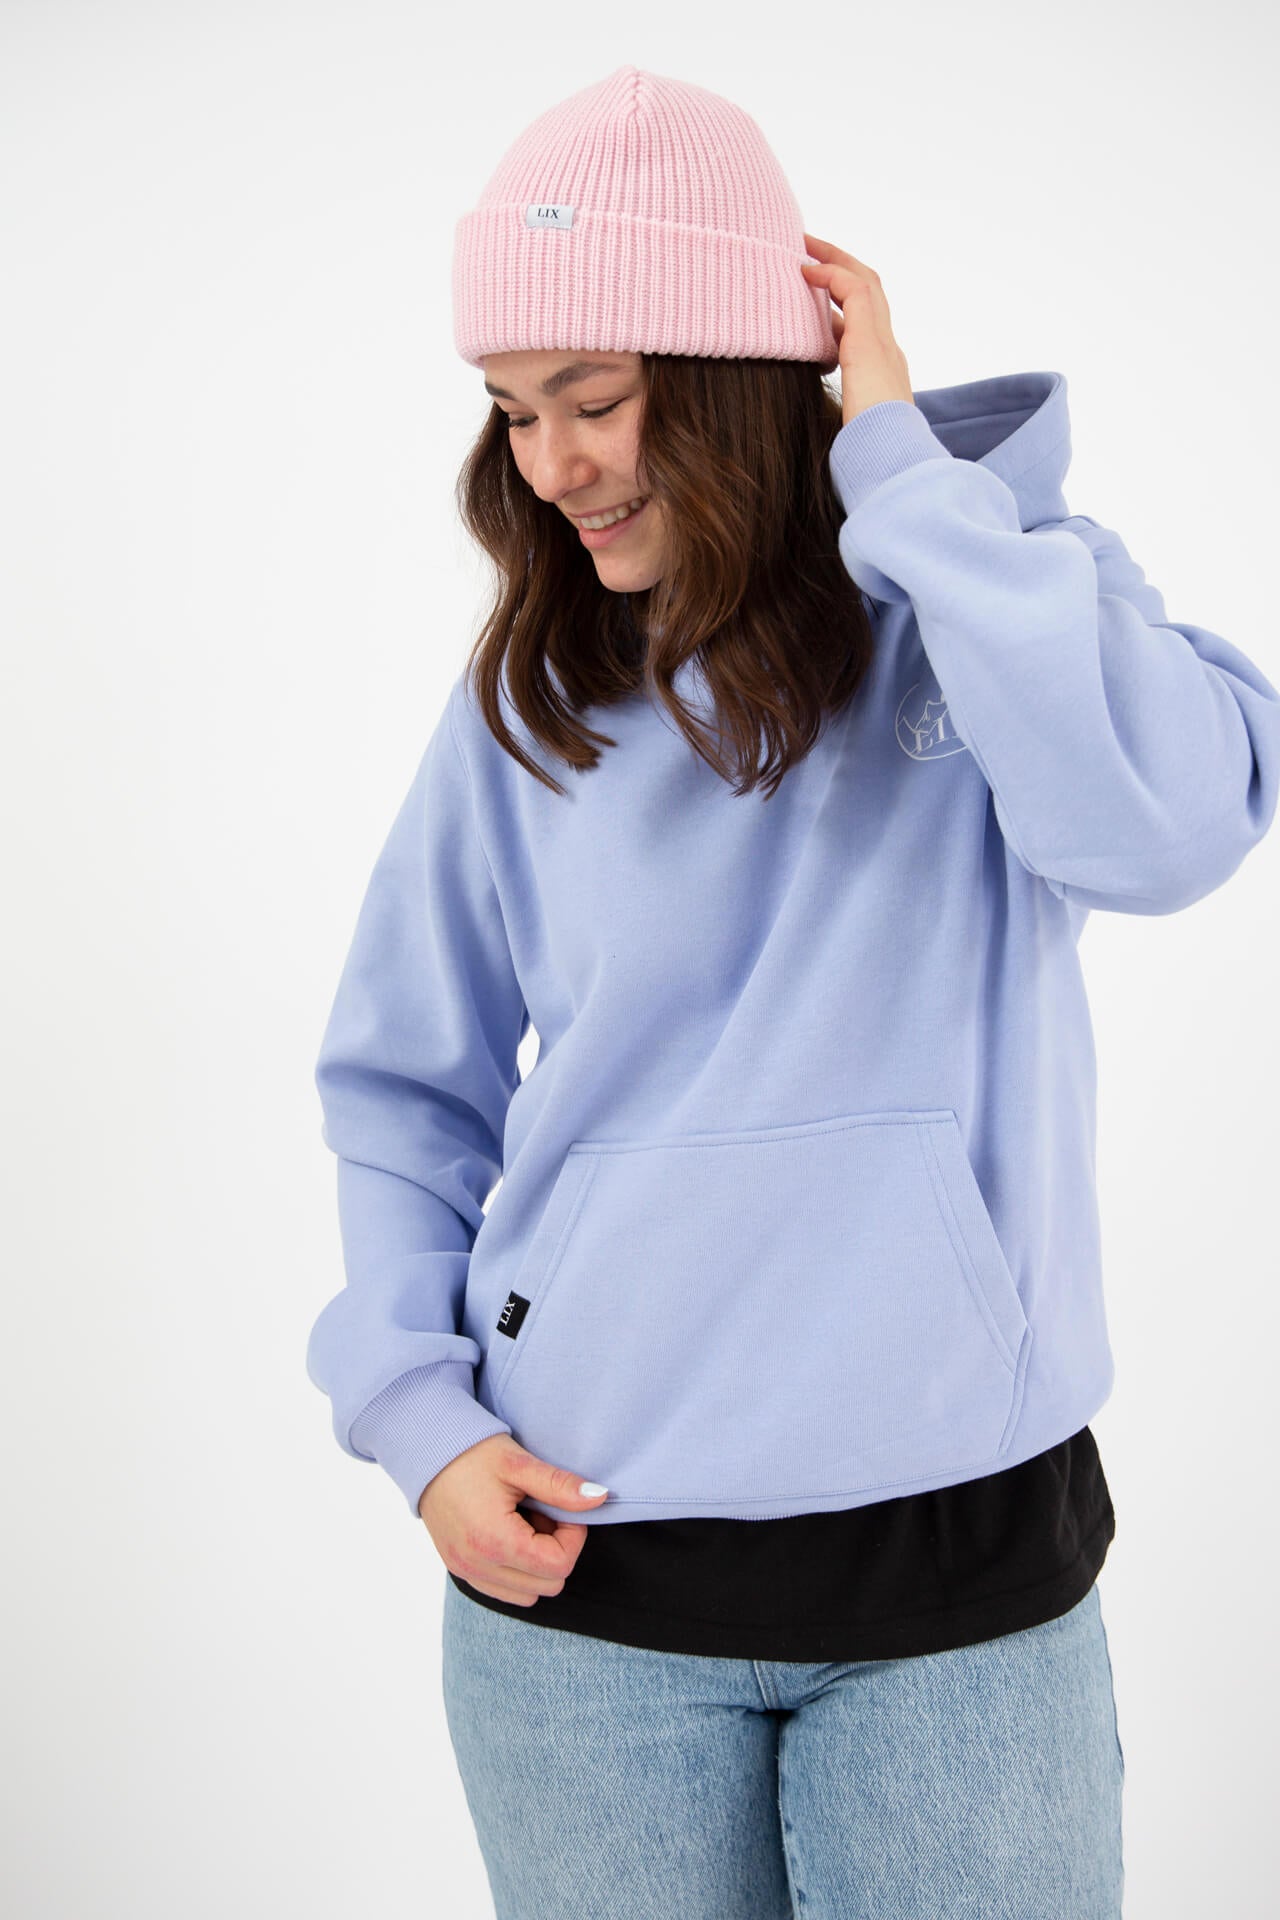 Lix design hoodie chandail a manche longue très chaud et confortable avec intérieur de style velours.  Concu par Lix design une entreprise Québécoise. 